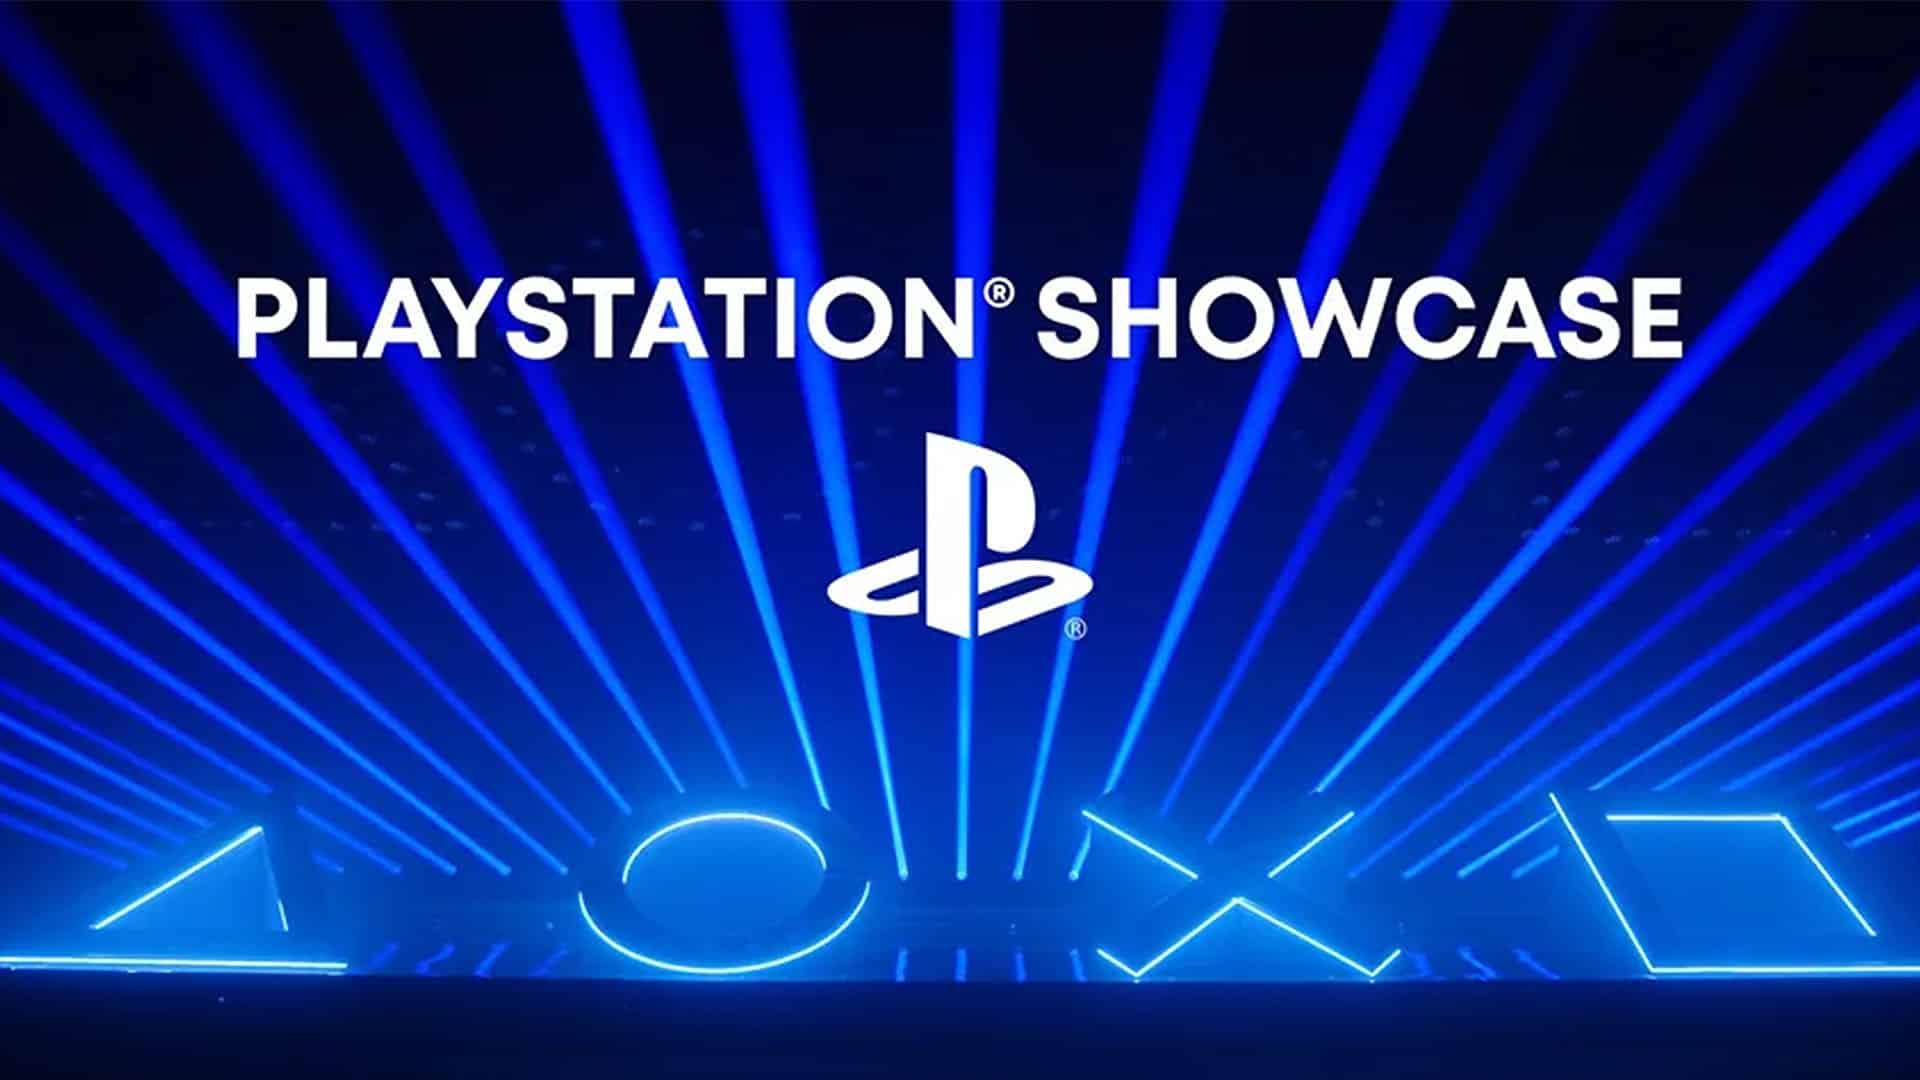 PlayStation-Showcase-Eines-der-meistgesehenen-Events-Zuschauerzahl-enth-llt